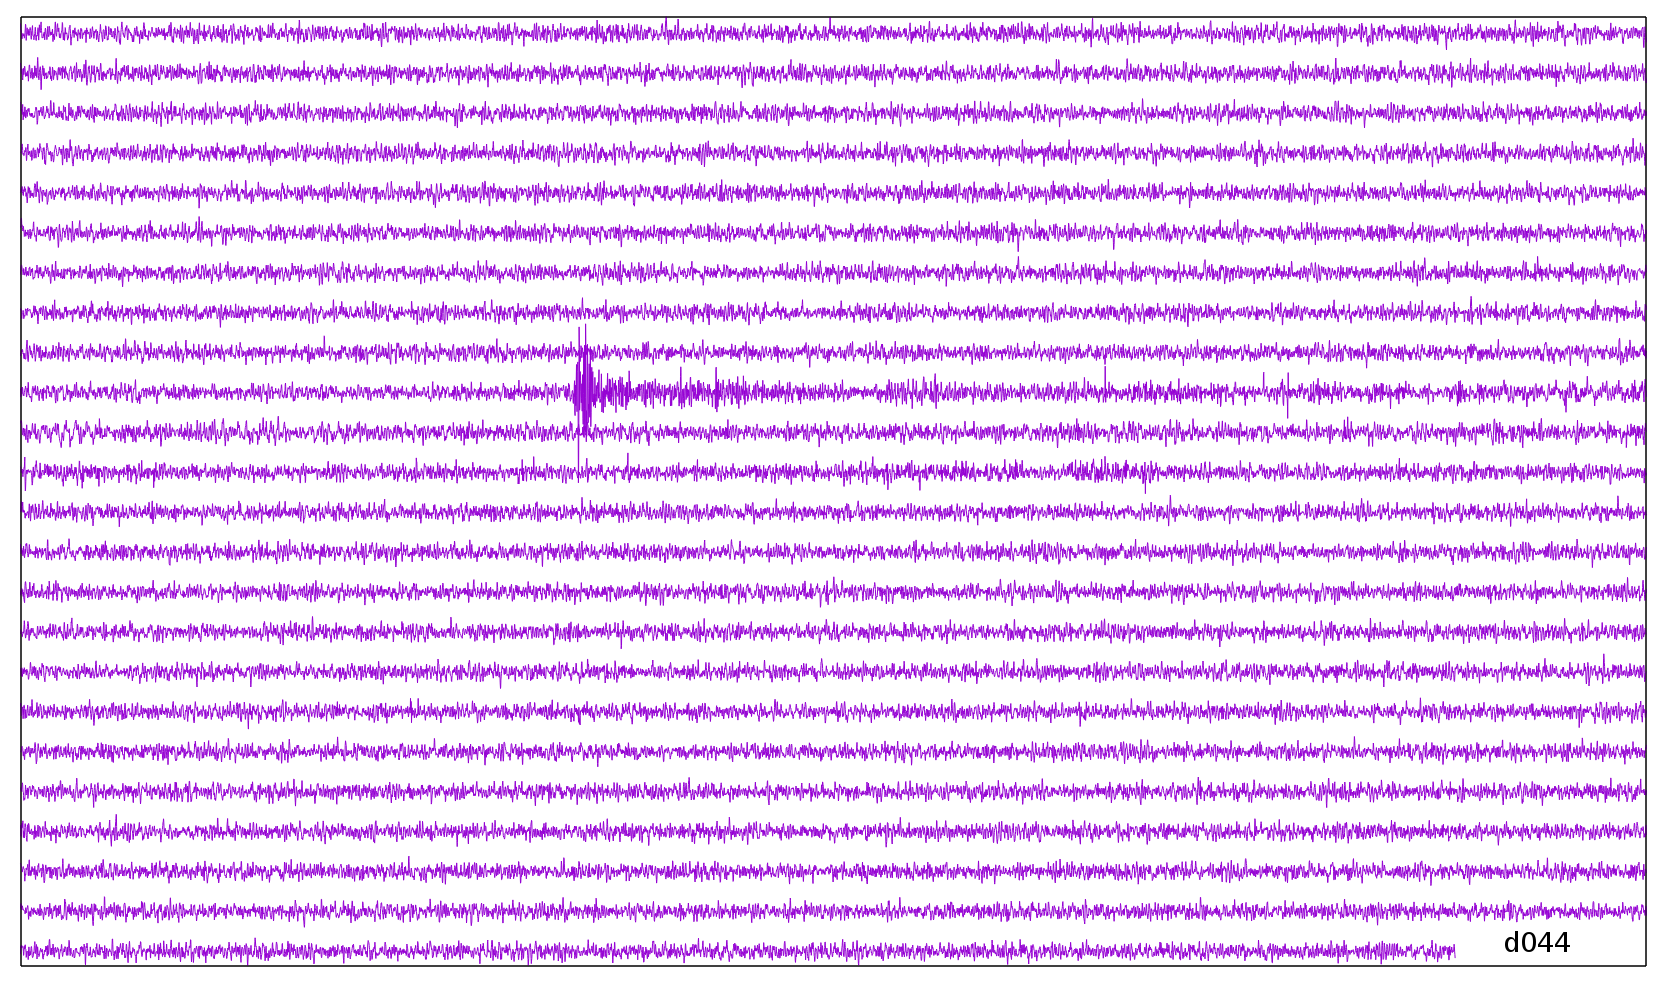 February 13 seismogrem